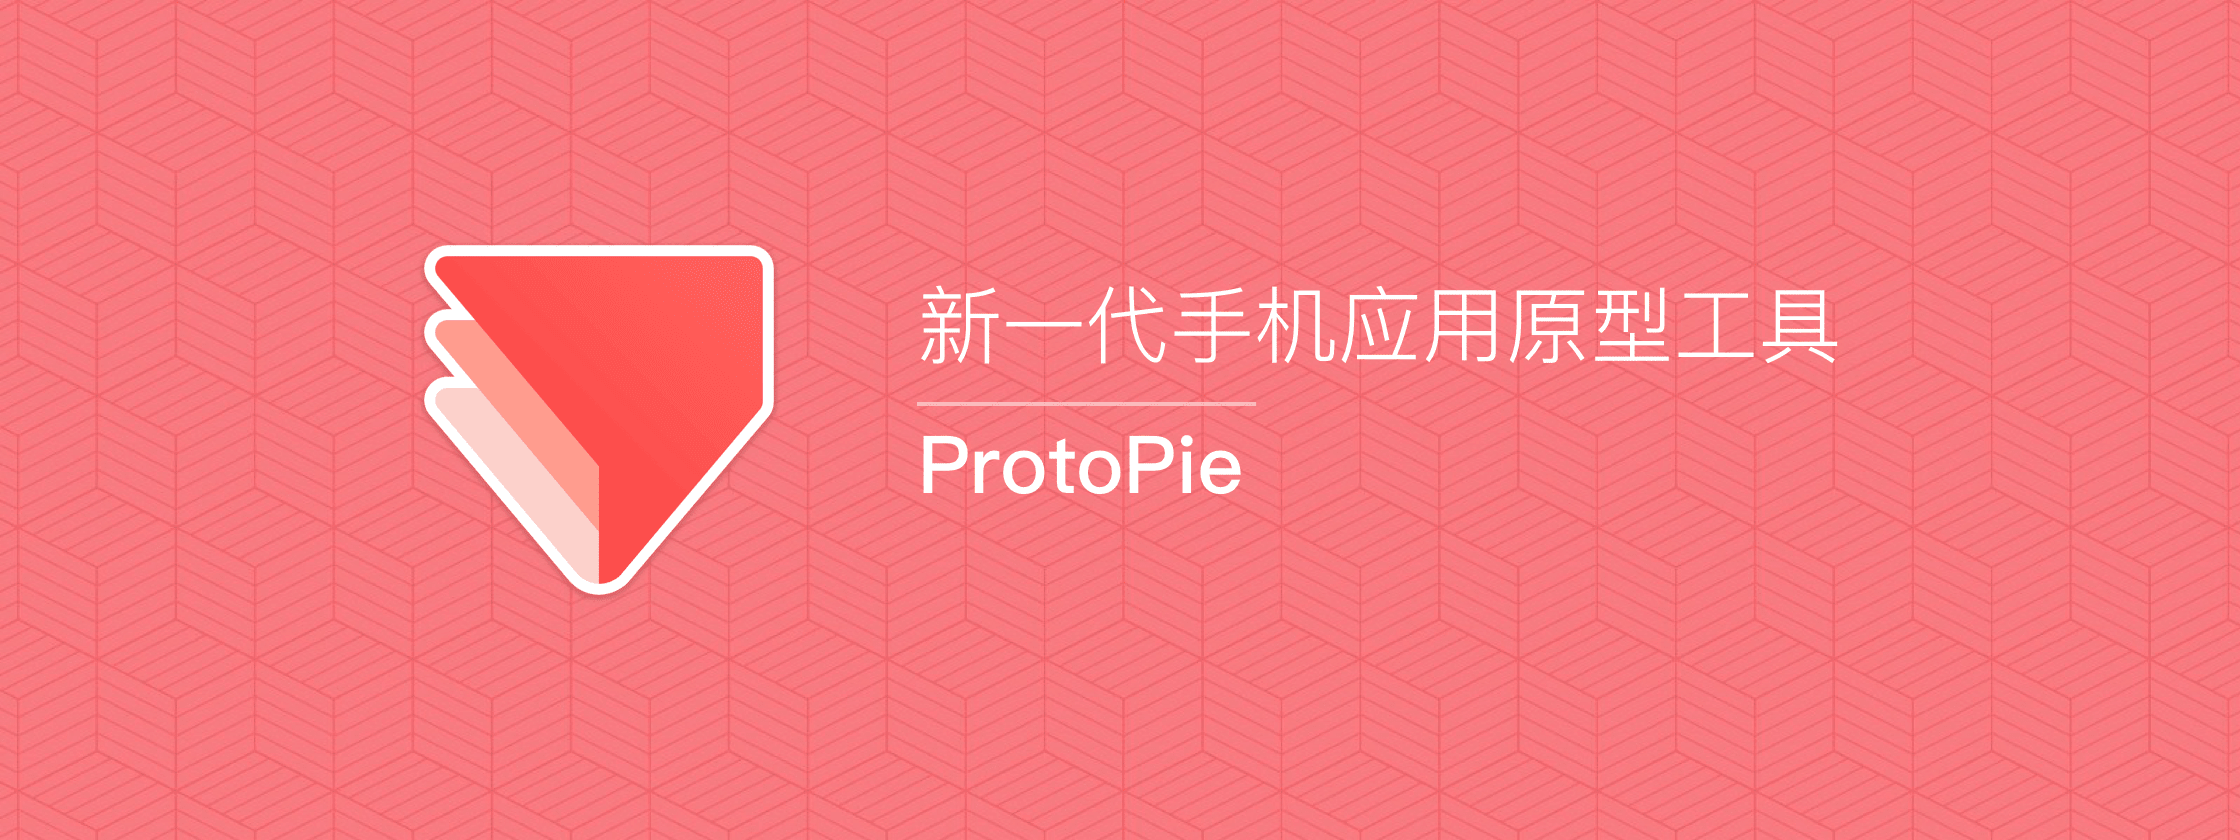 ProtoPie – 新一代手机应用原型工具